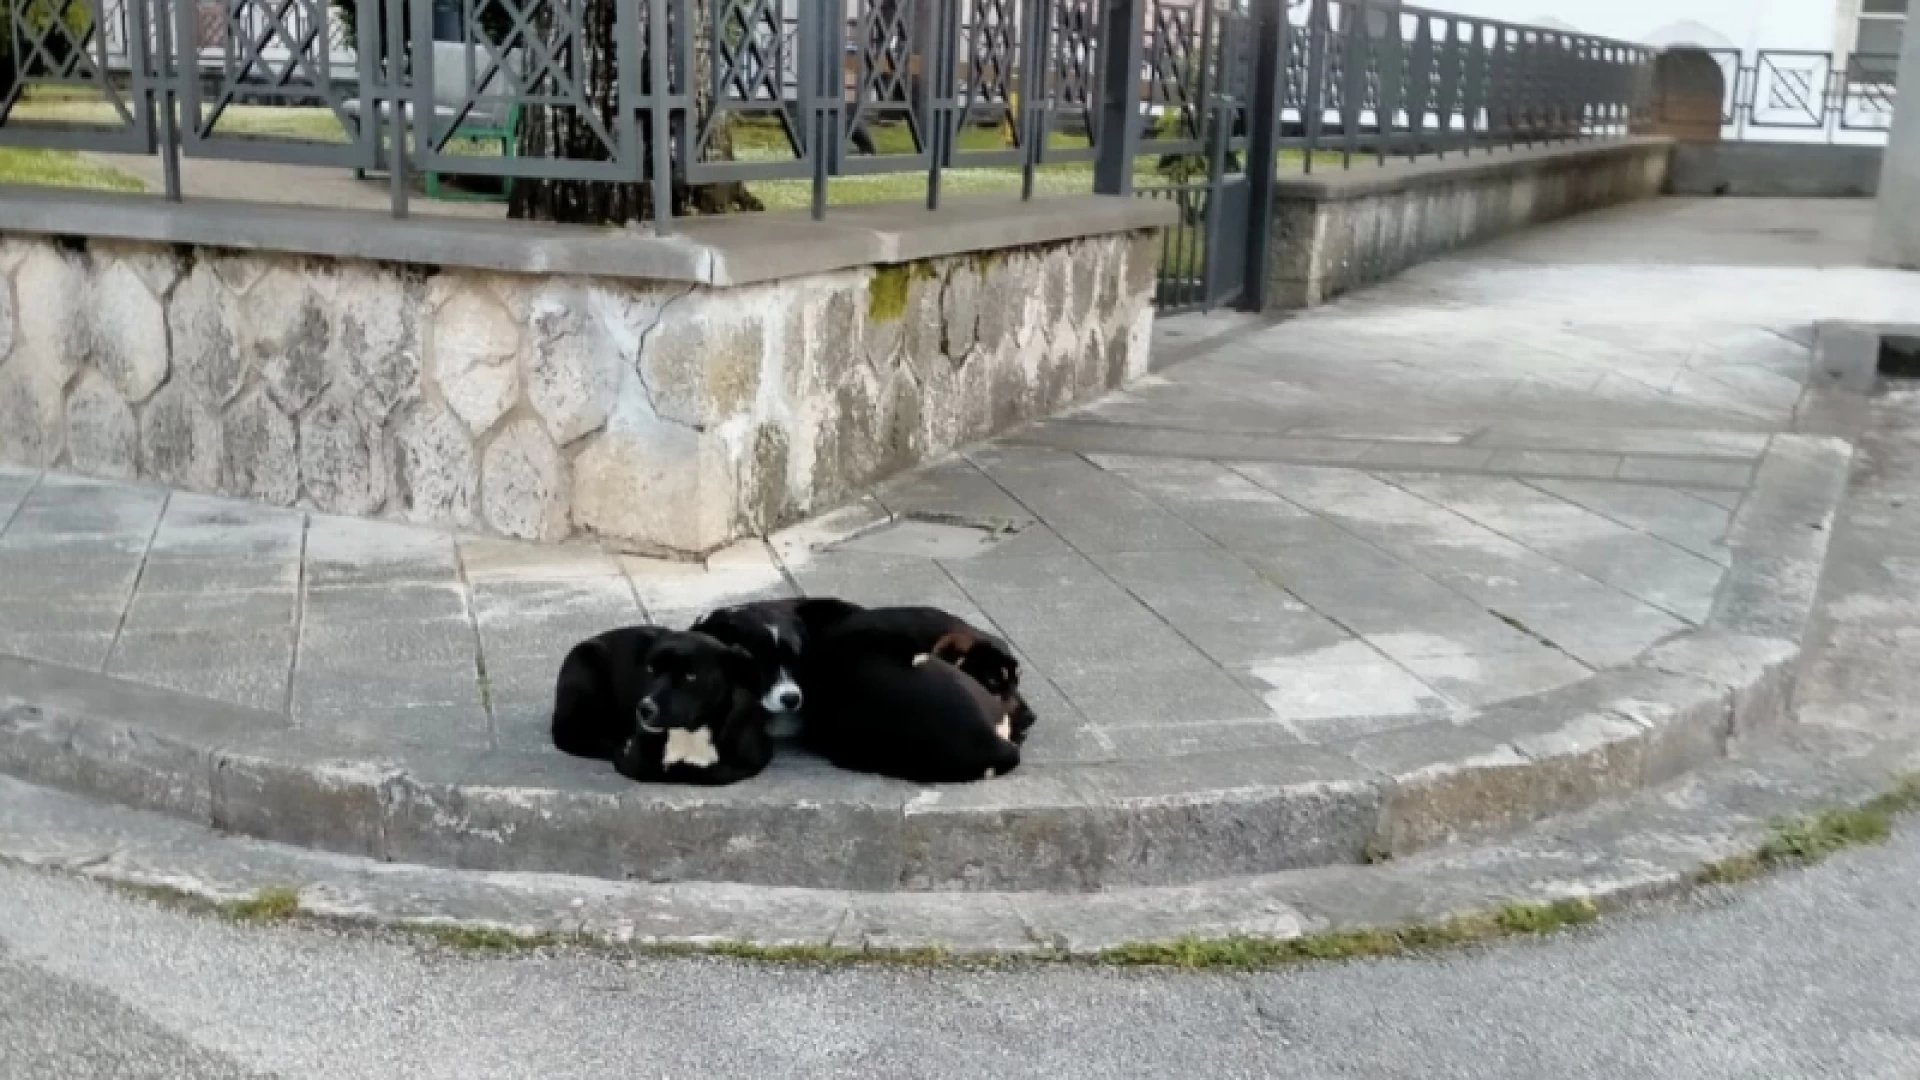 Sessano del Molise, negli ultimi mesi numerosi cani abbandonati sul territorio comunale. Il sindaco Venditti lancia un appello alle istituzioni e alla cittadinanza.